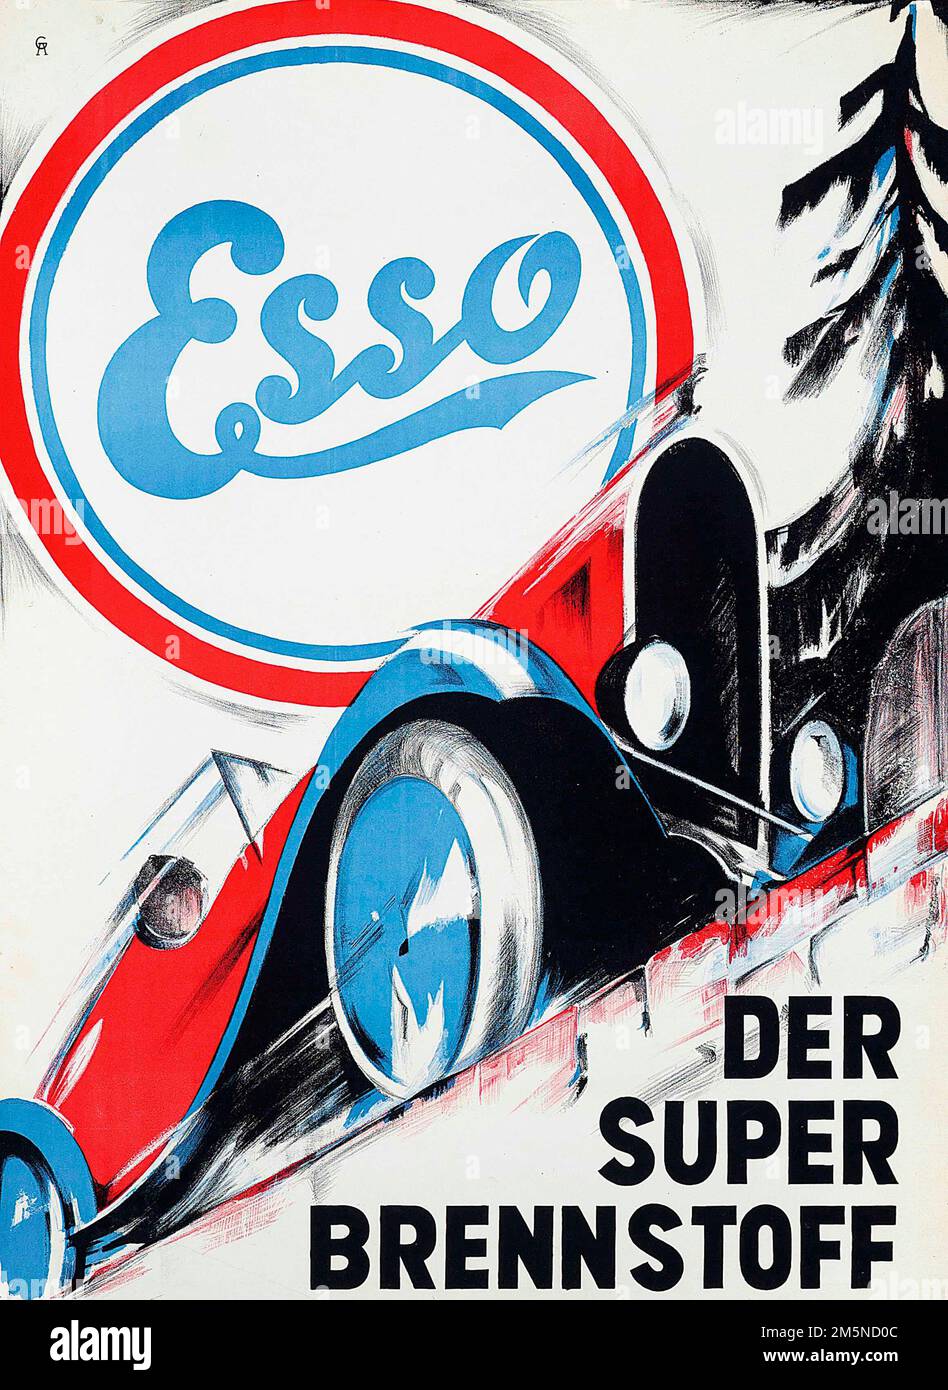 Viejo cartel publicitario feat un coche vintage - ESSO Der Super Brennstoff, c 1948 Foto de stock